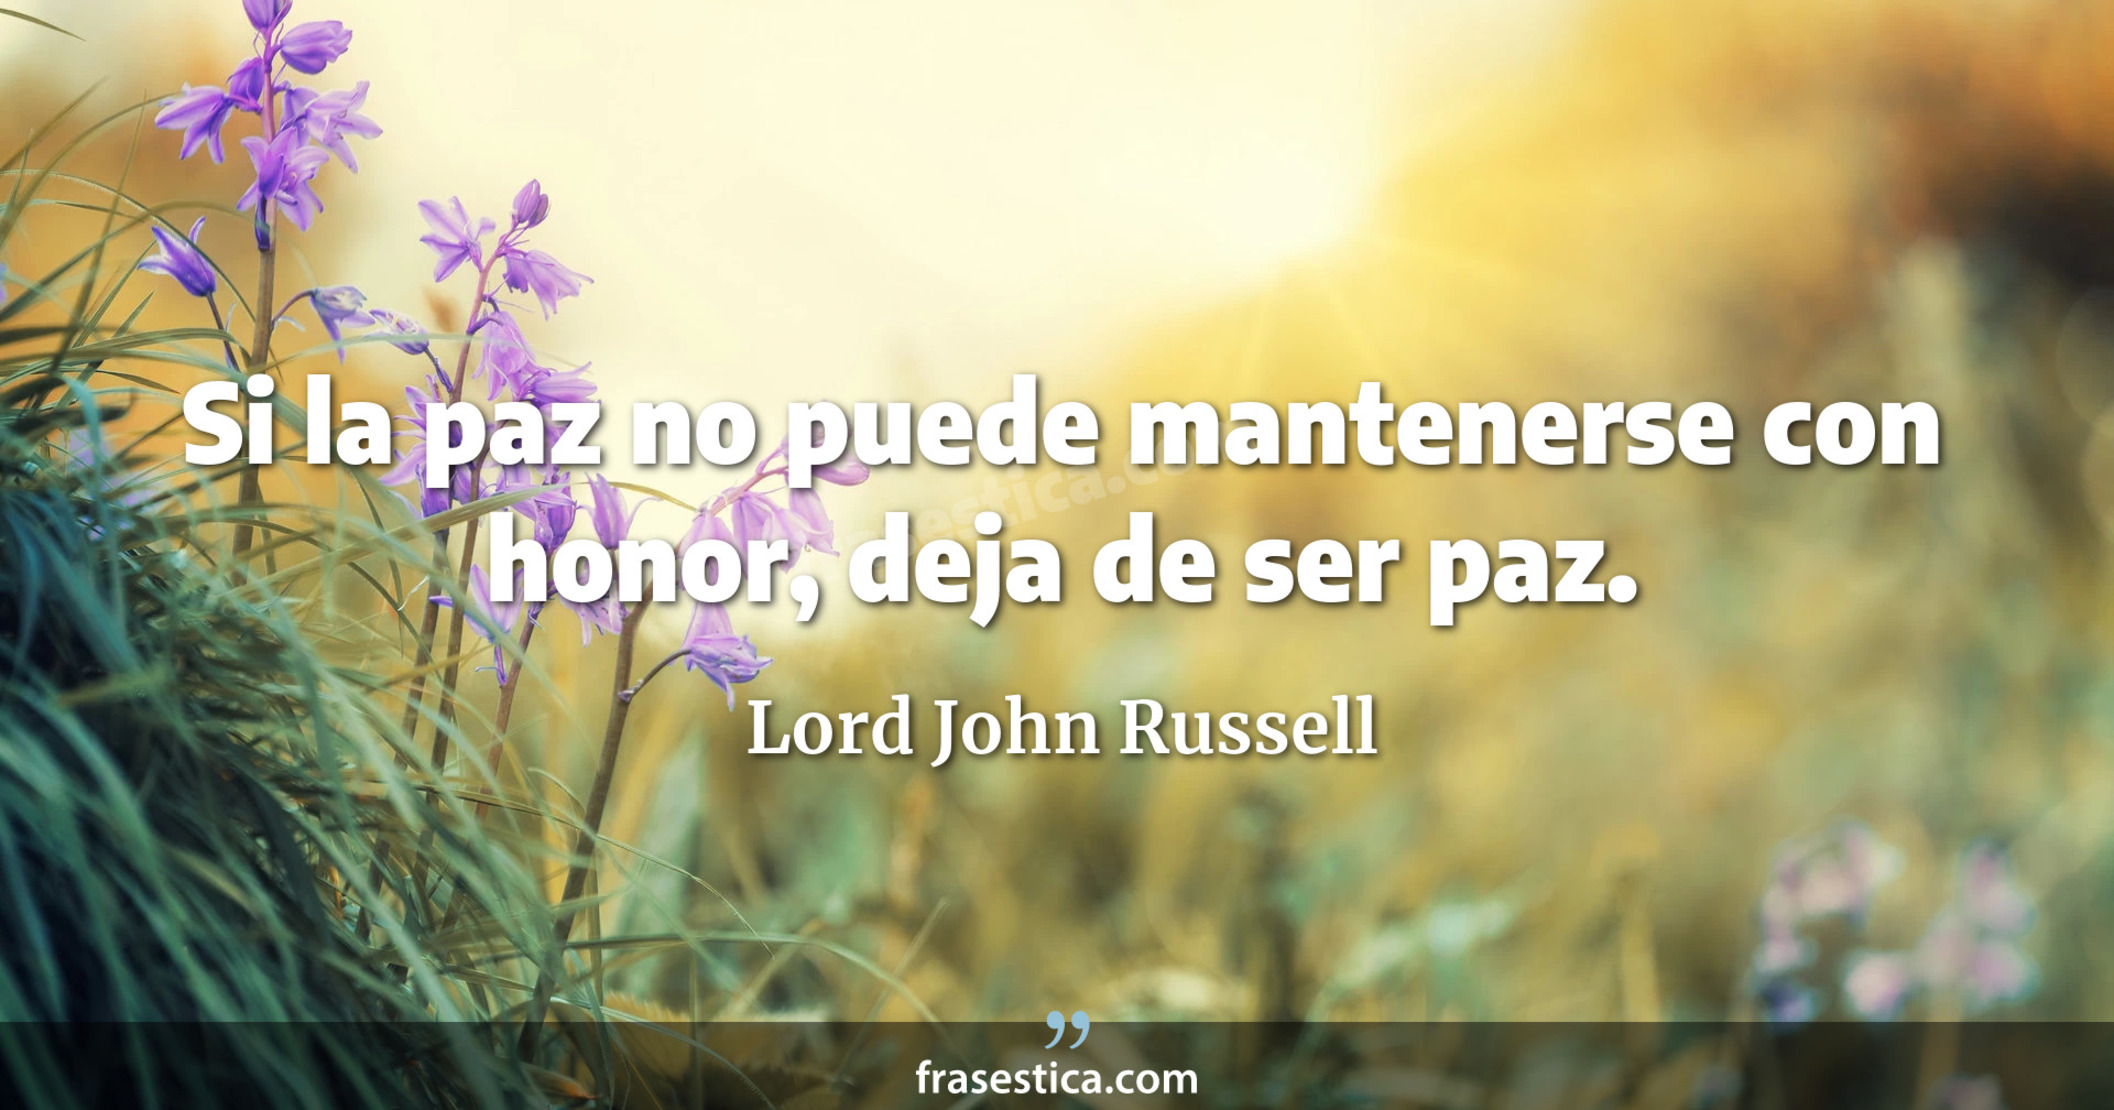 Si la paz no puede mantenerse con honor, deja de ser paz. - Lord John Russell